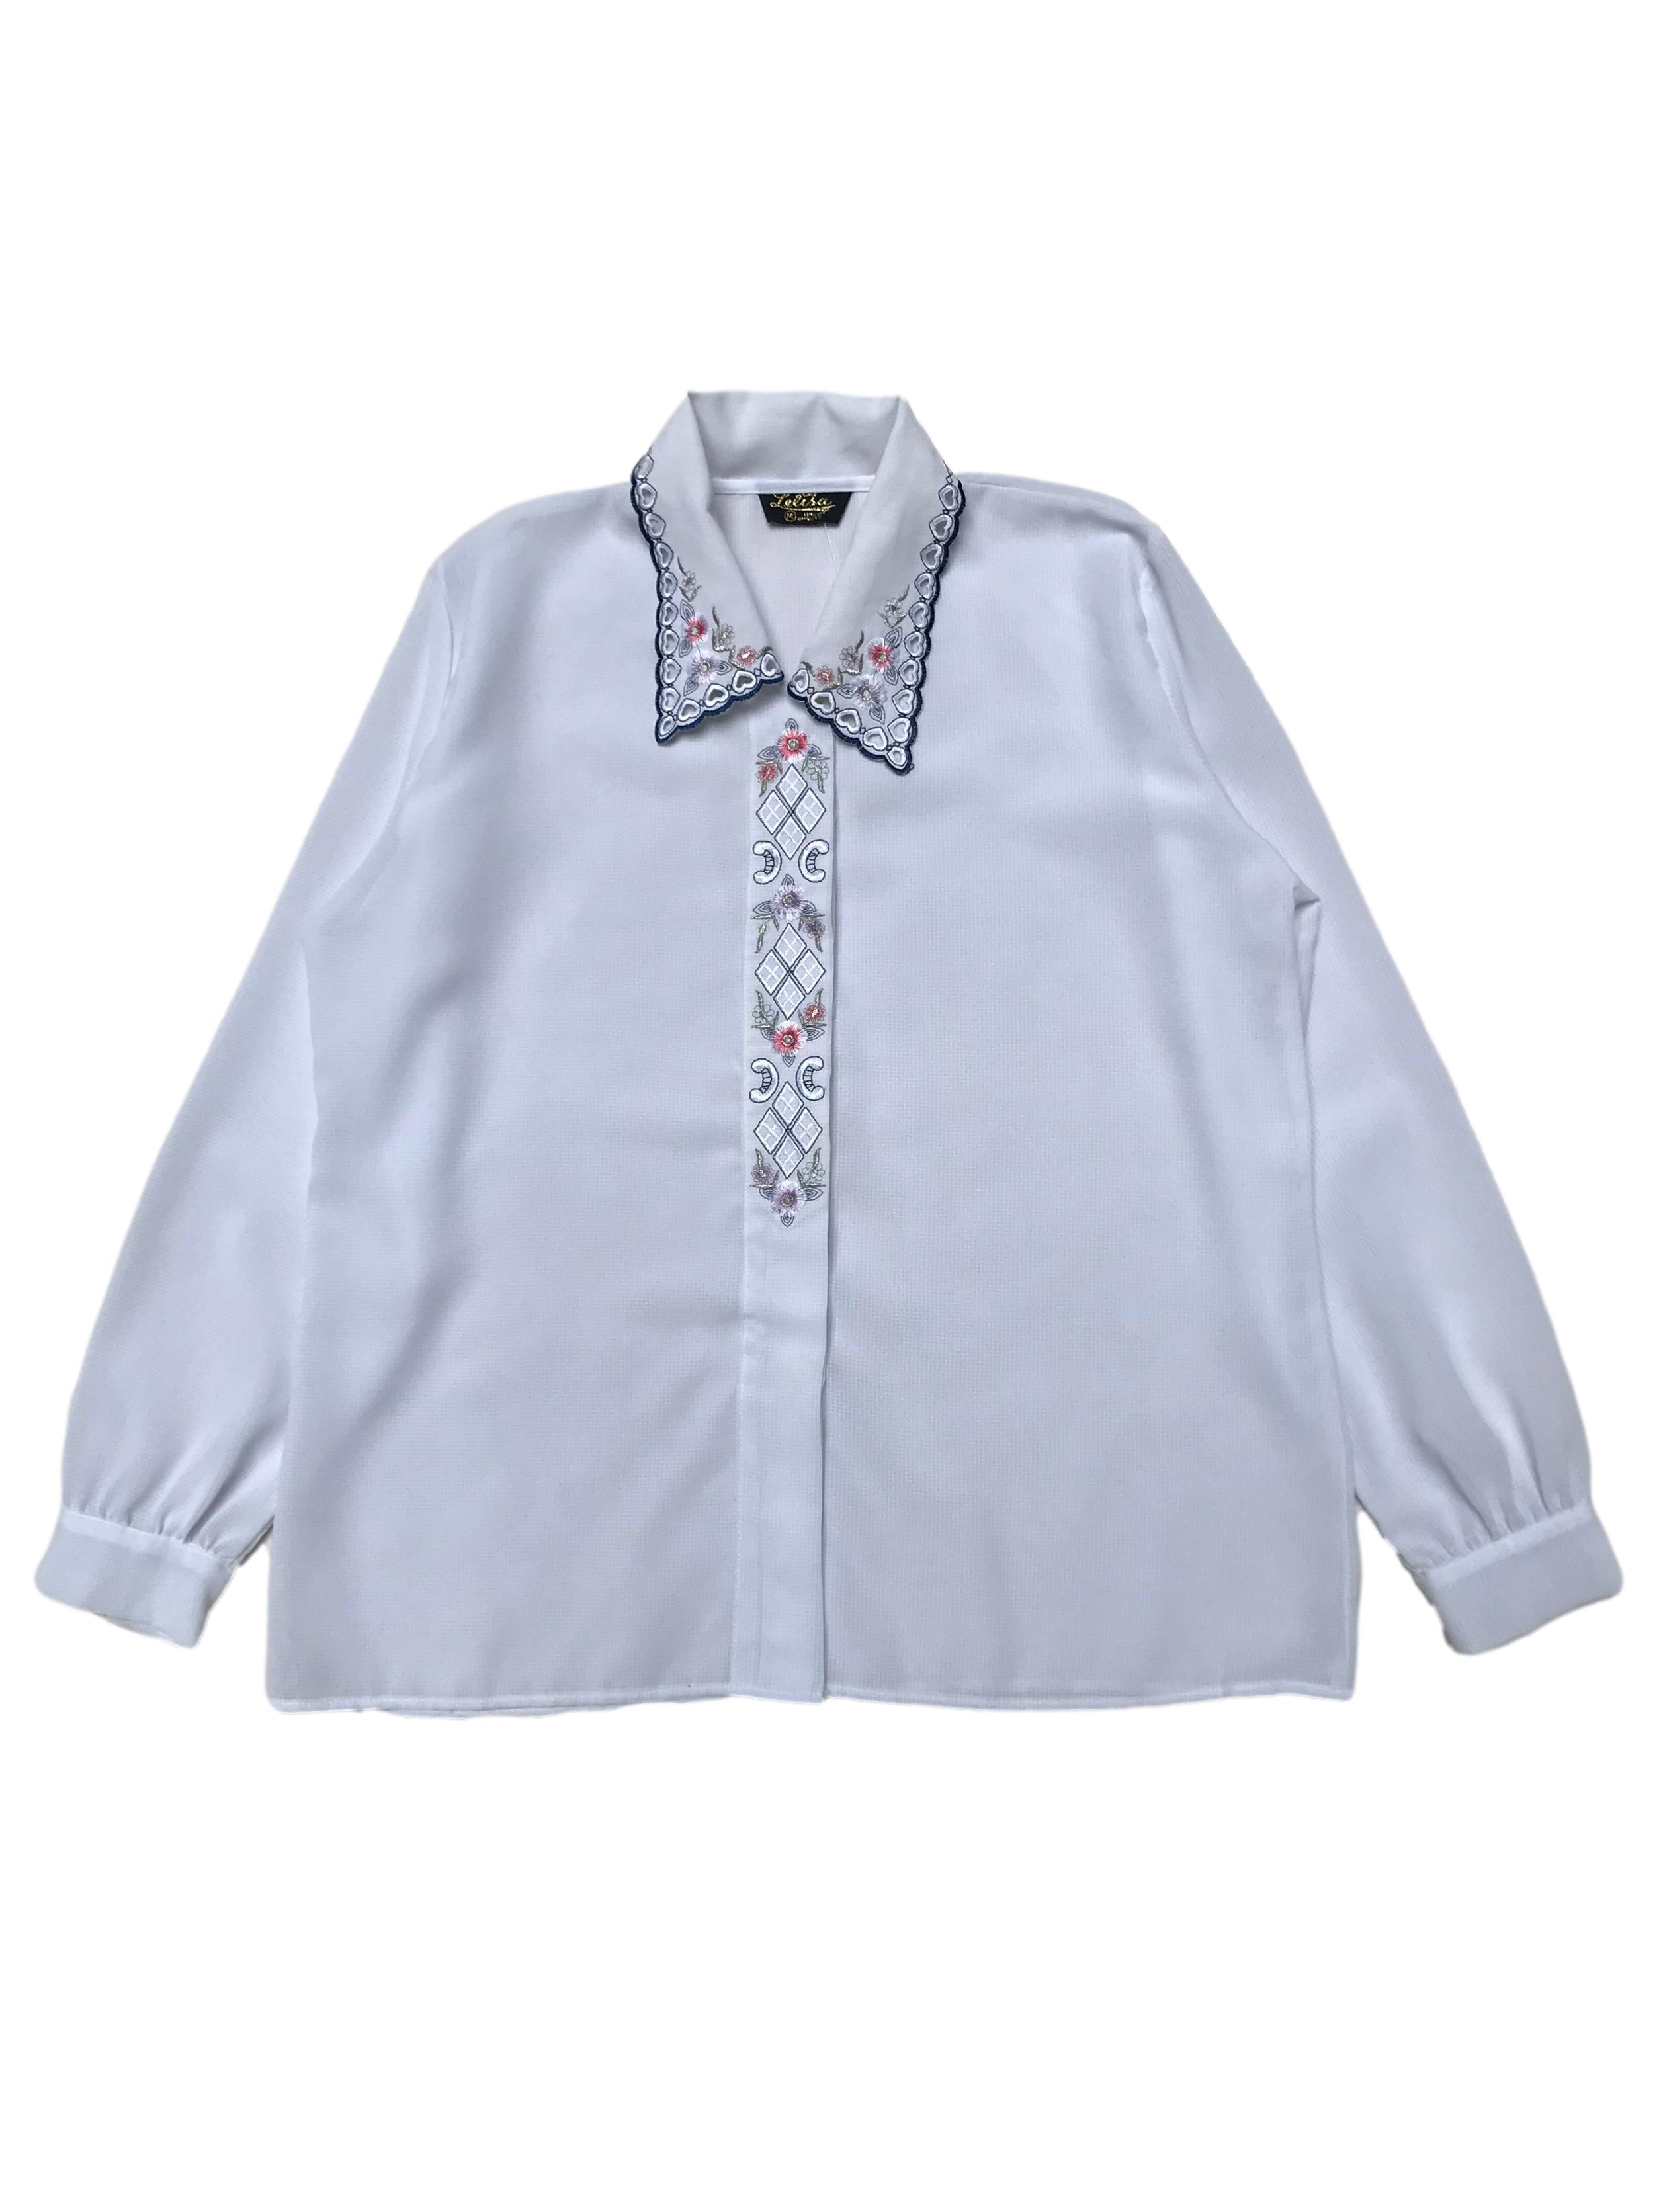 Blusa vintage de crepé blanco con detalles bordados y calados en cuello y tapa de botones. Ancho 110cm Largo 62cm